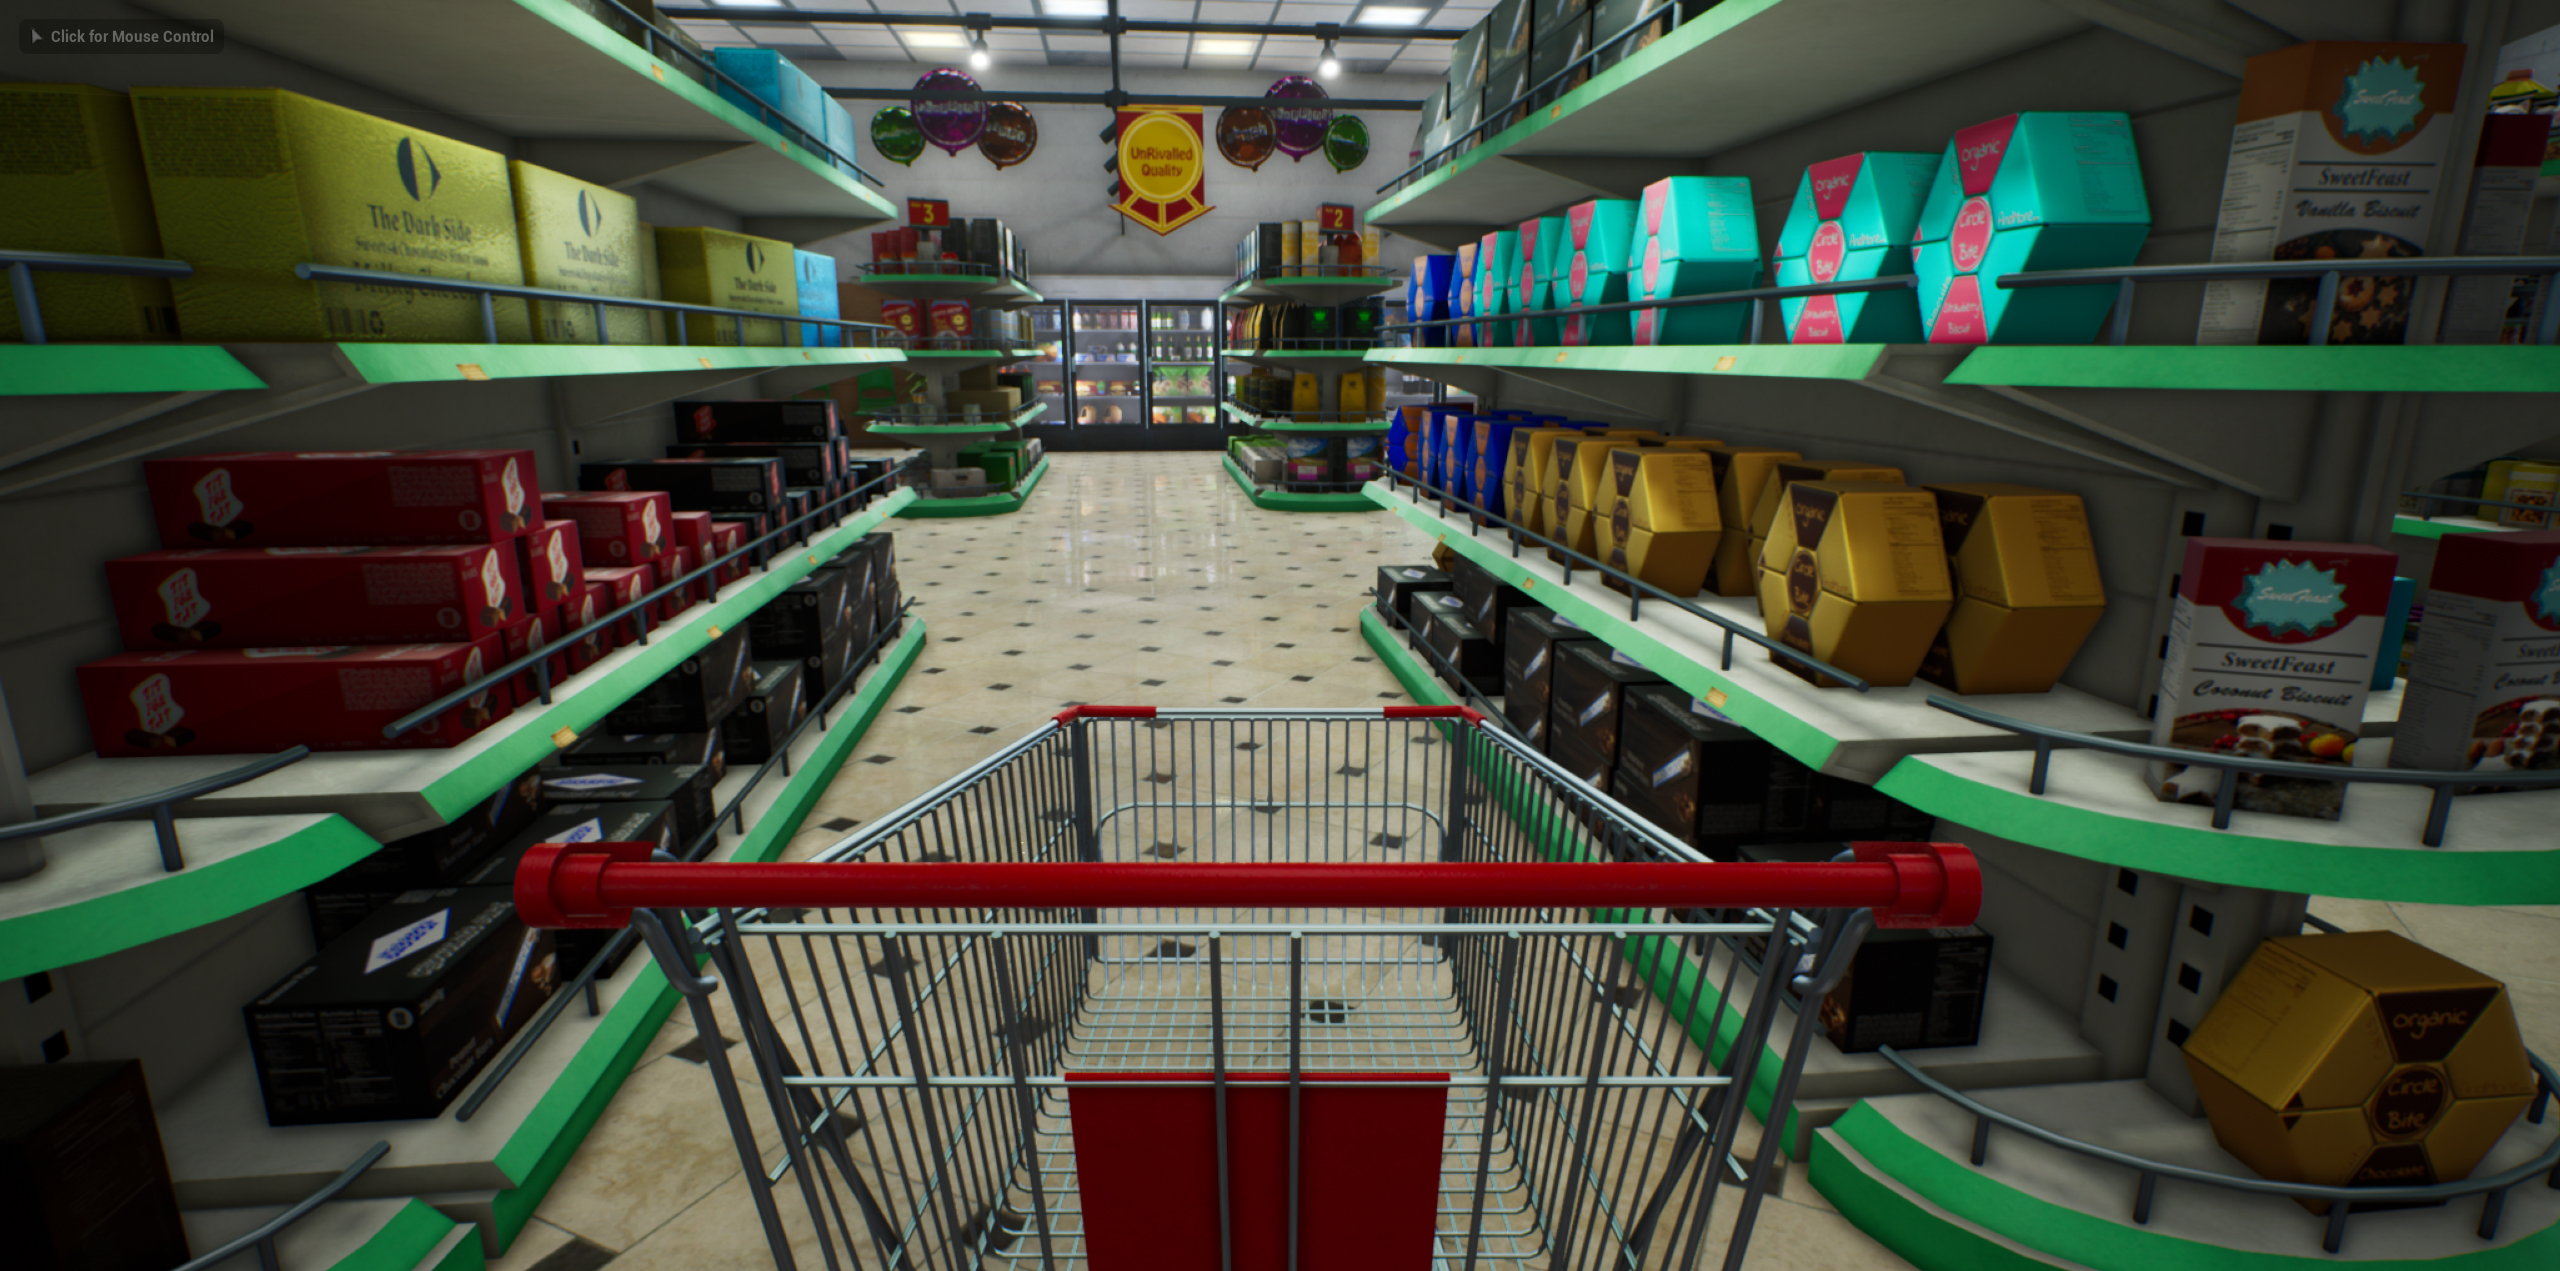 Supermarket simulator 0.1 2.2. Супермаркет симулятор игра. Симулятор супермаркета стим. Симулятор продуктового магазина. Симулятор магазина 2.